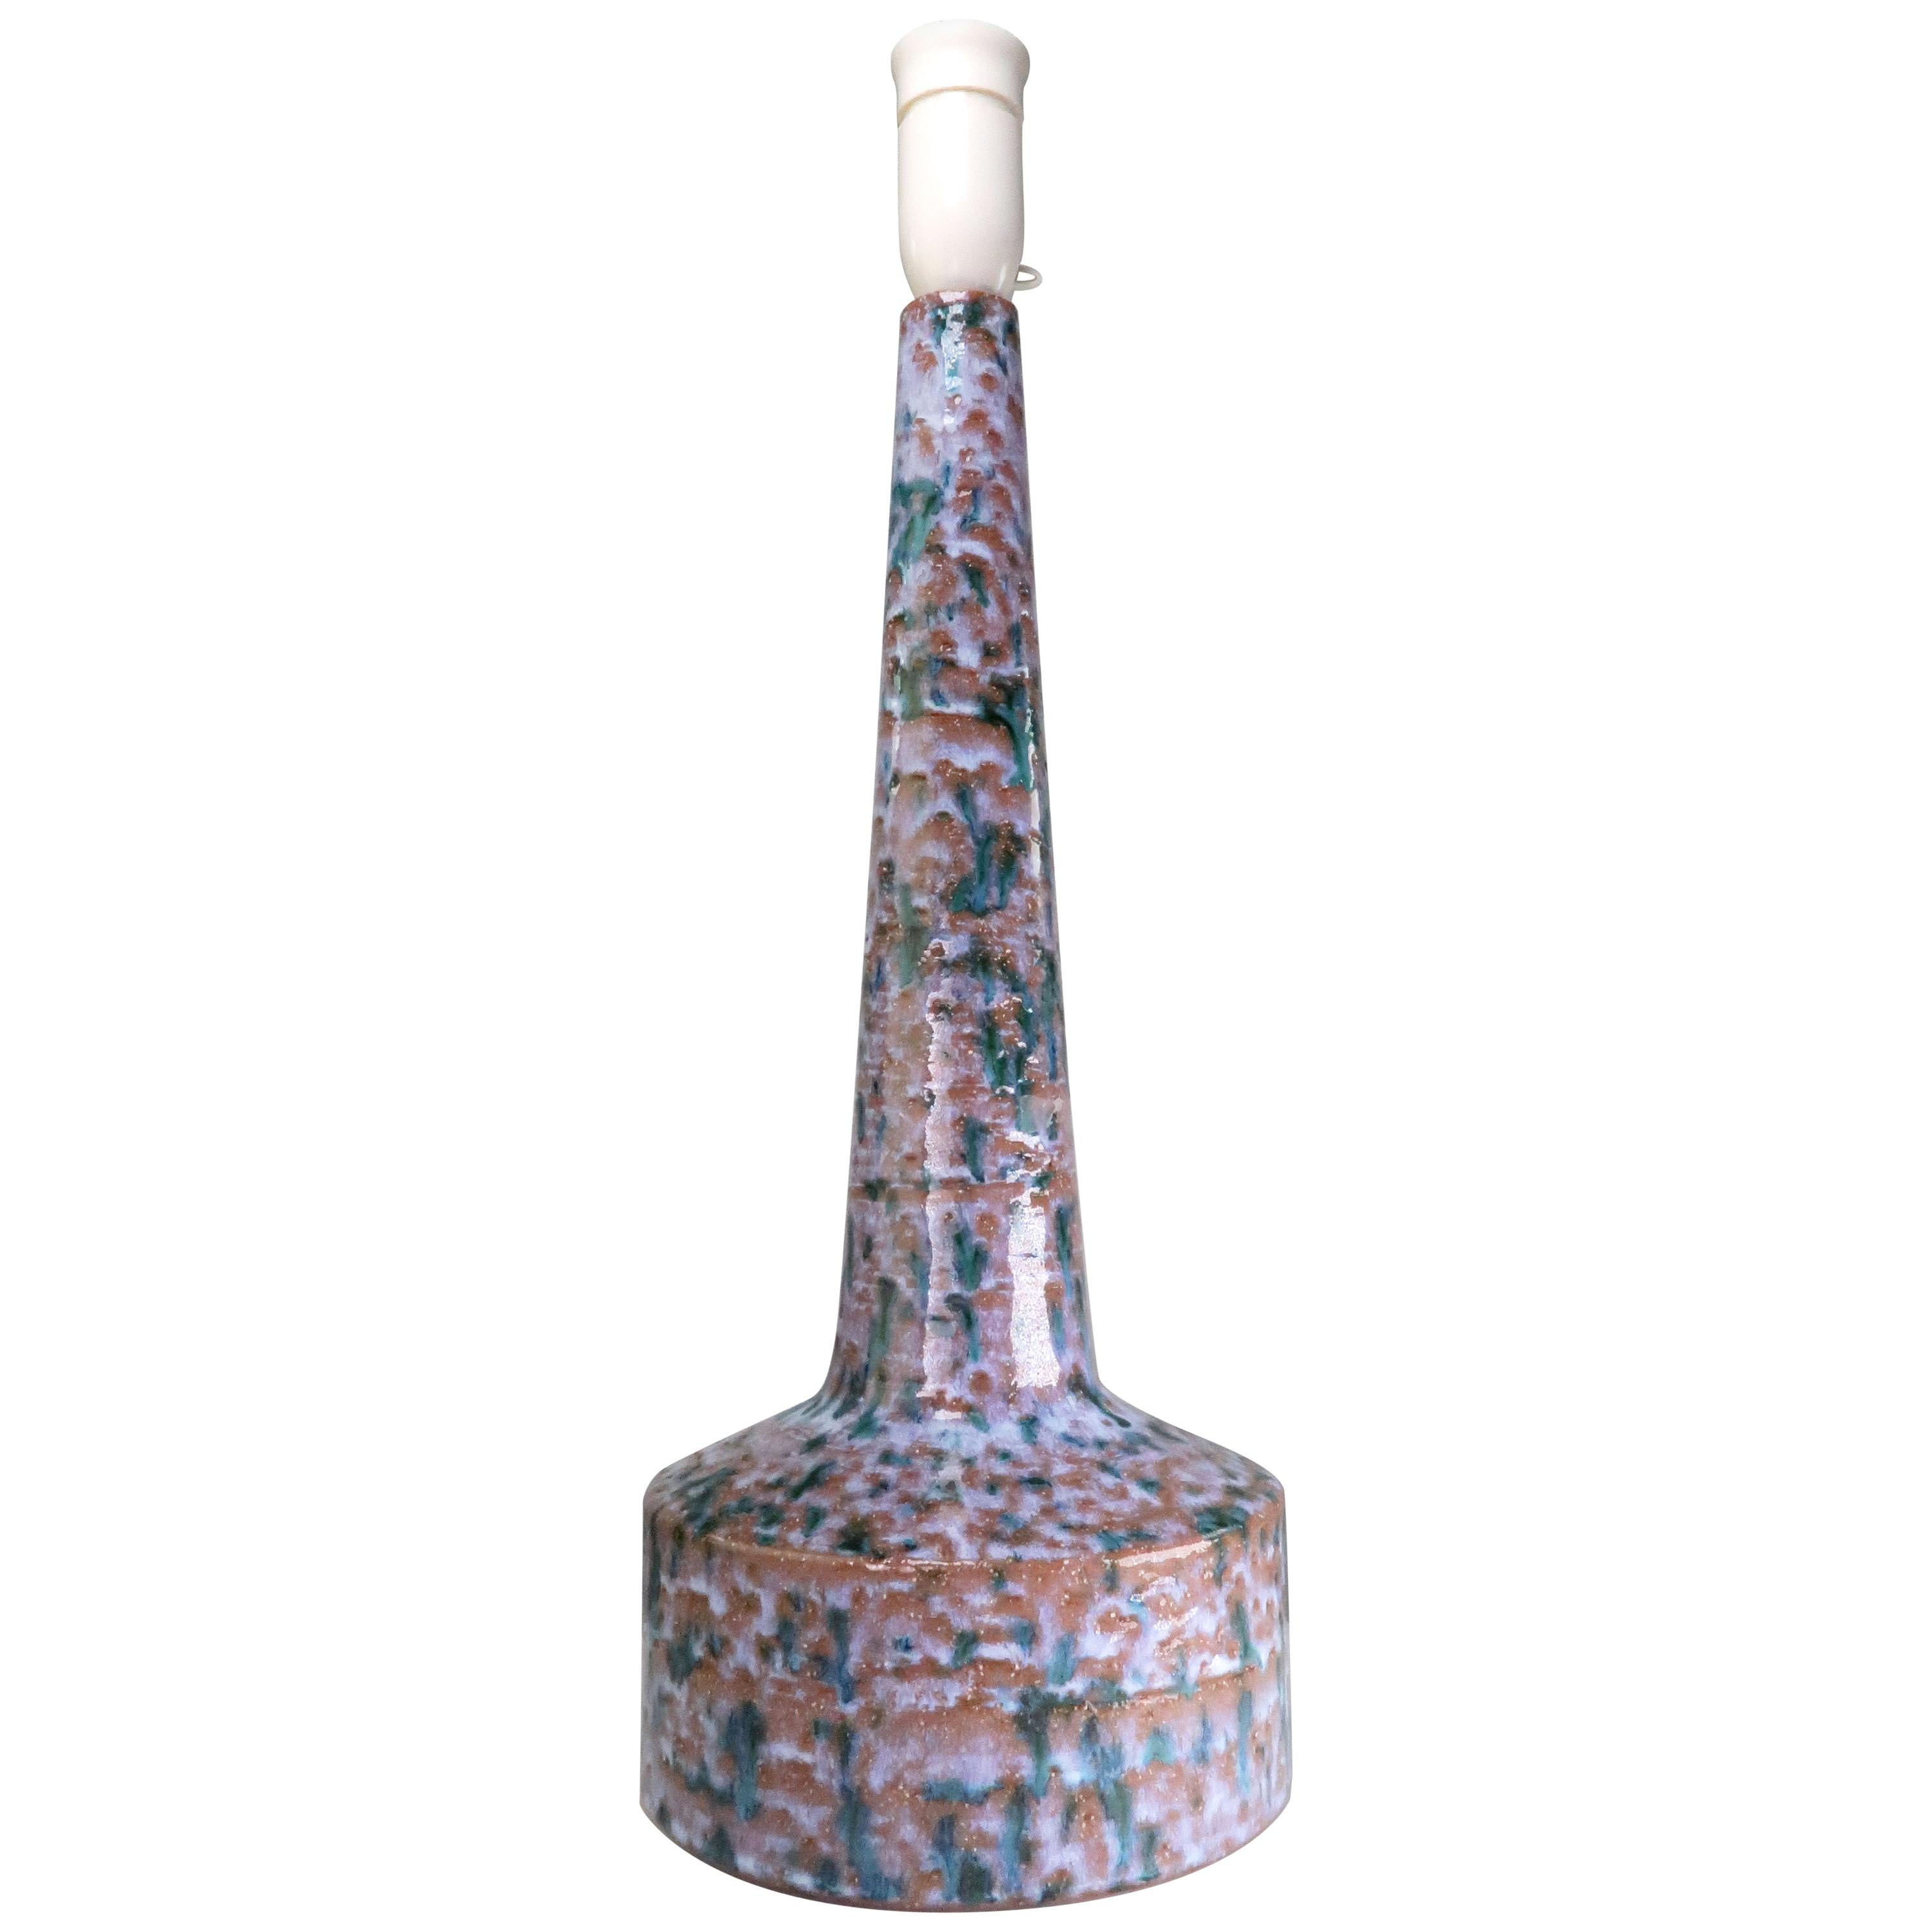 Große modernistische mehrfarbige Keramik-Tischlampe, 1971